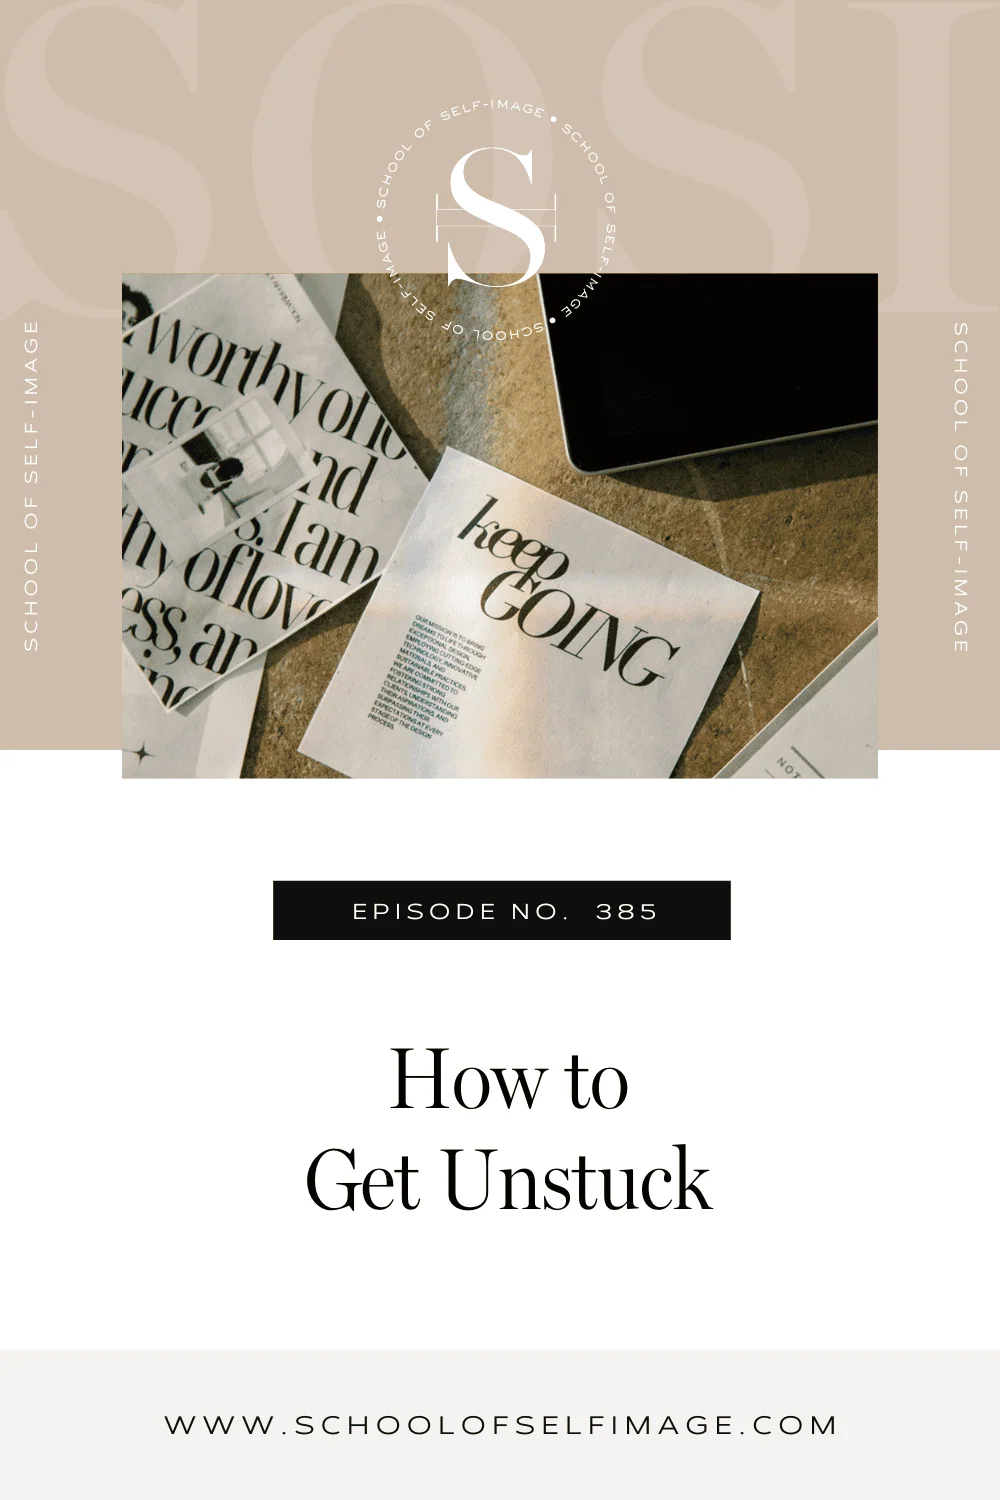  How to Get Unstuck